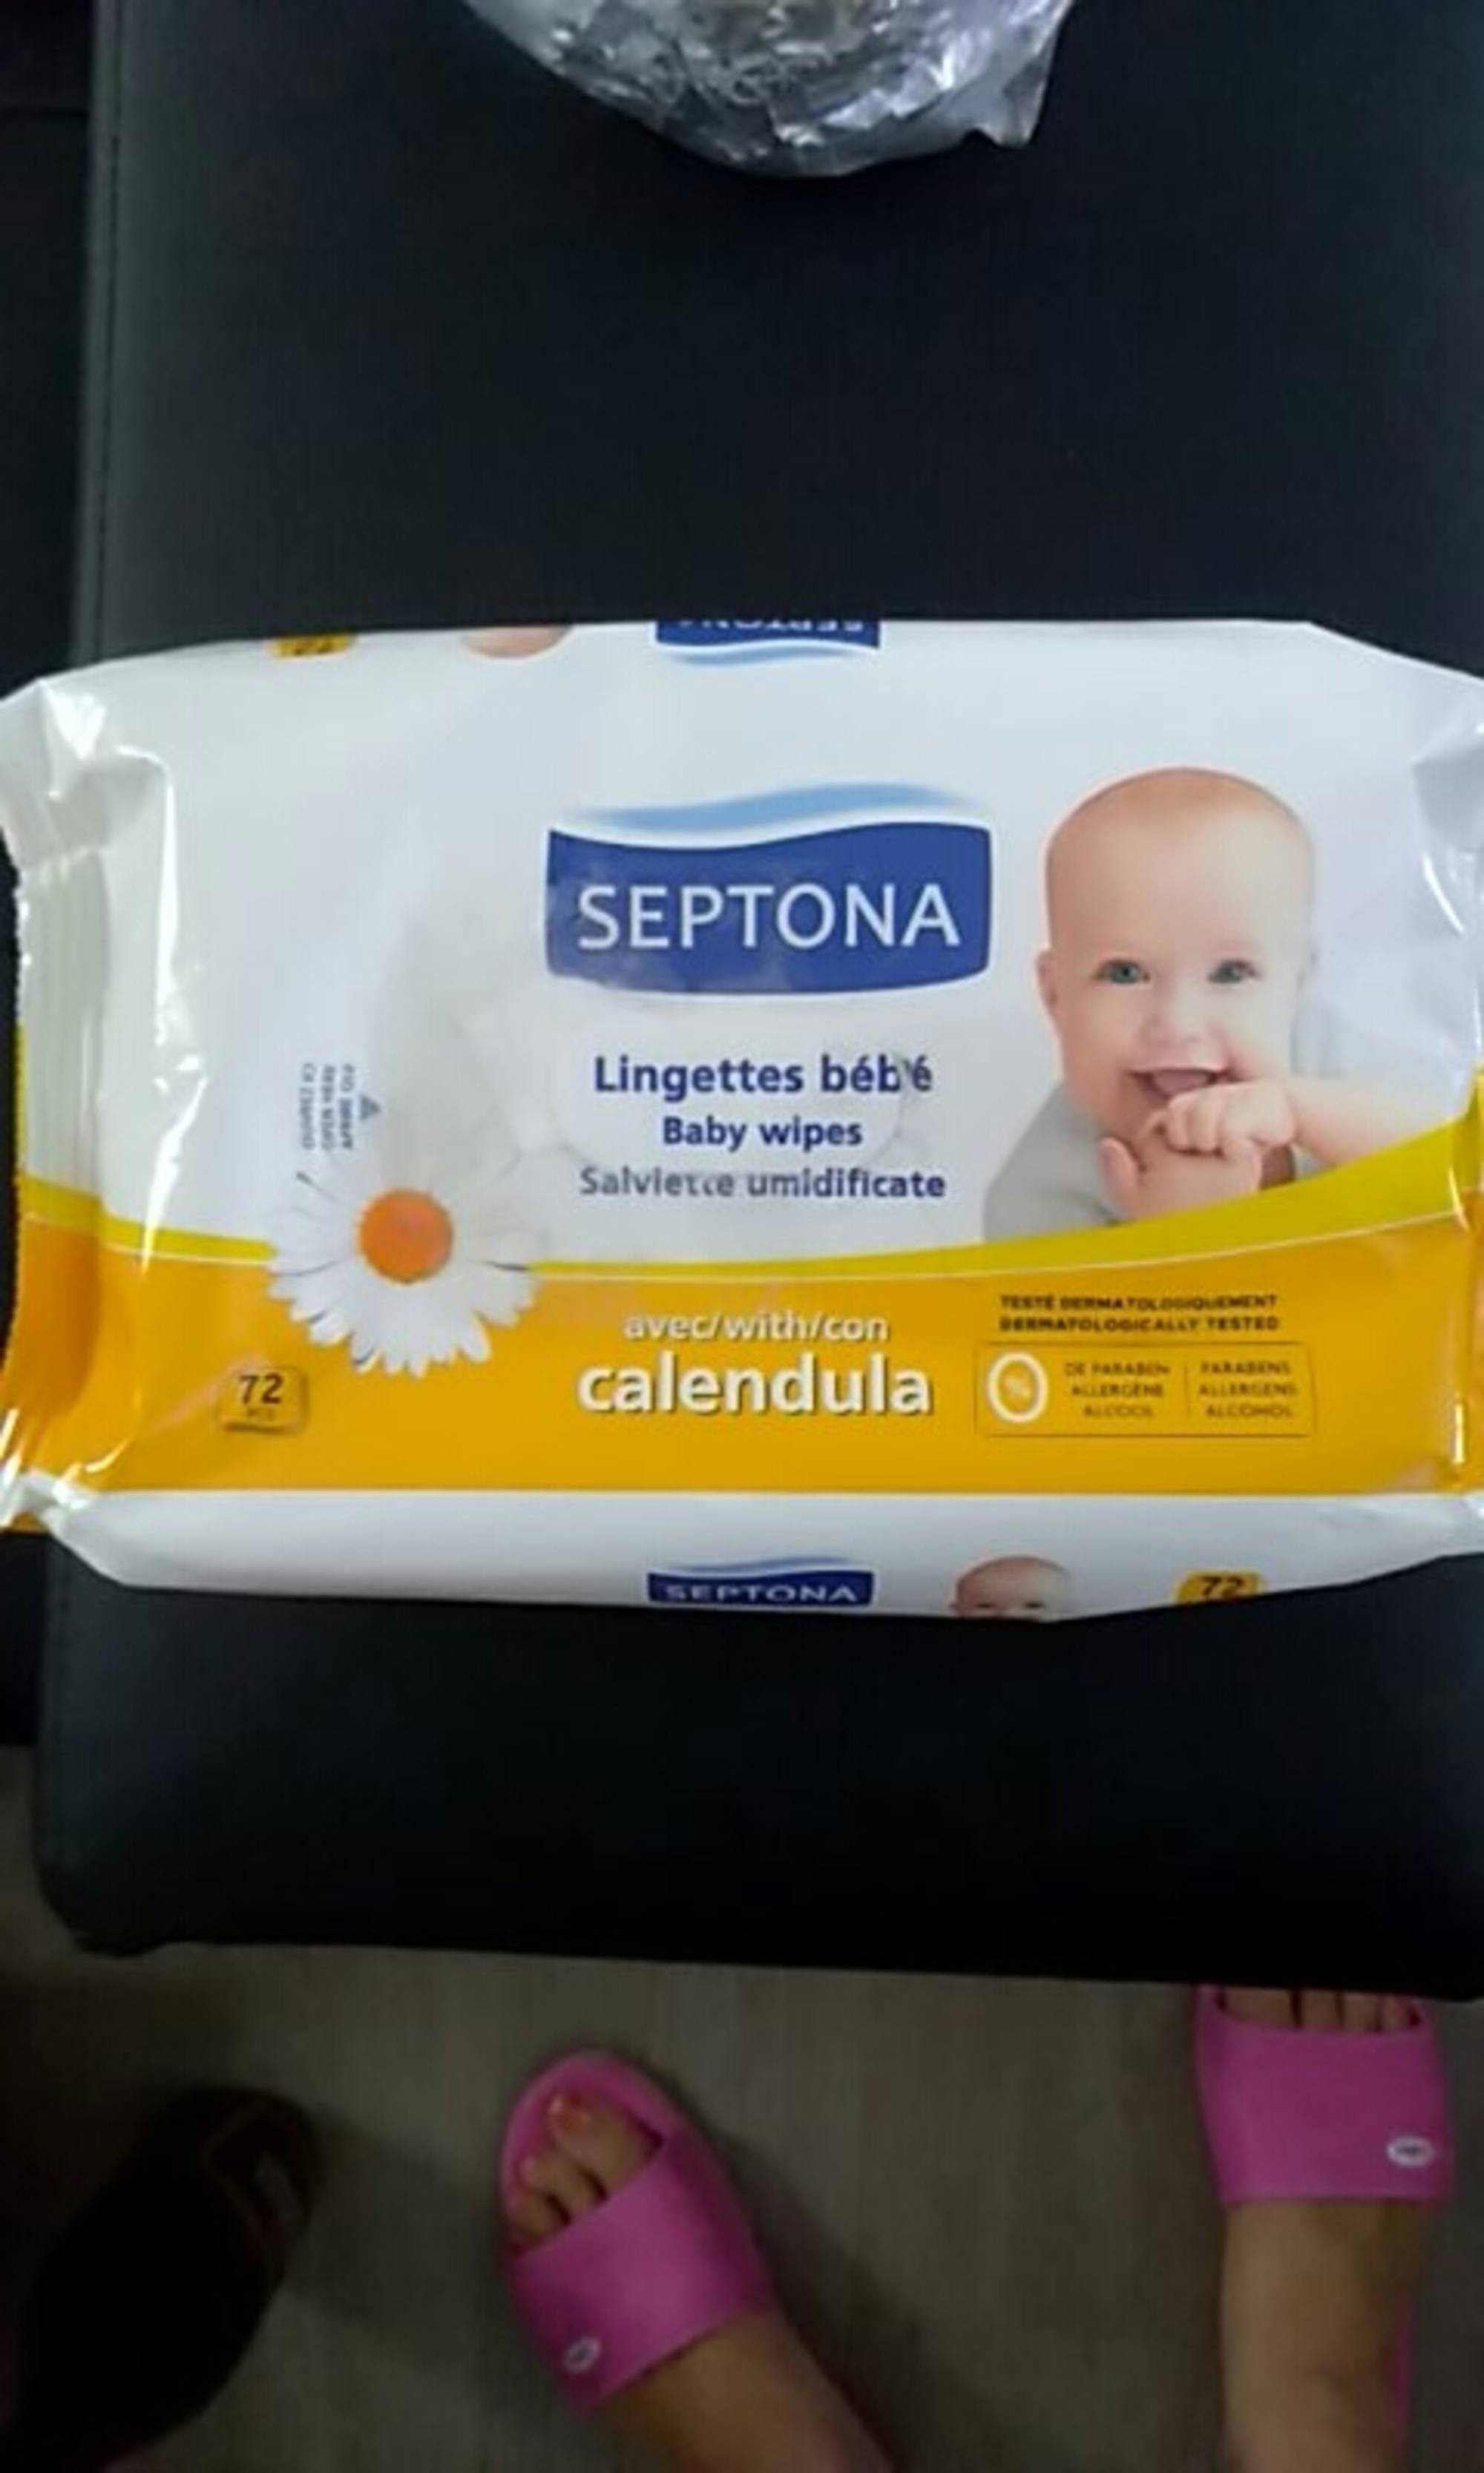 SEPTONA - Lingettes bébé calendula